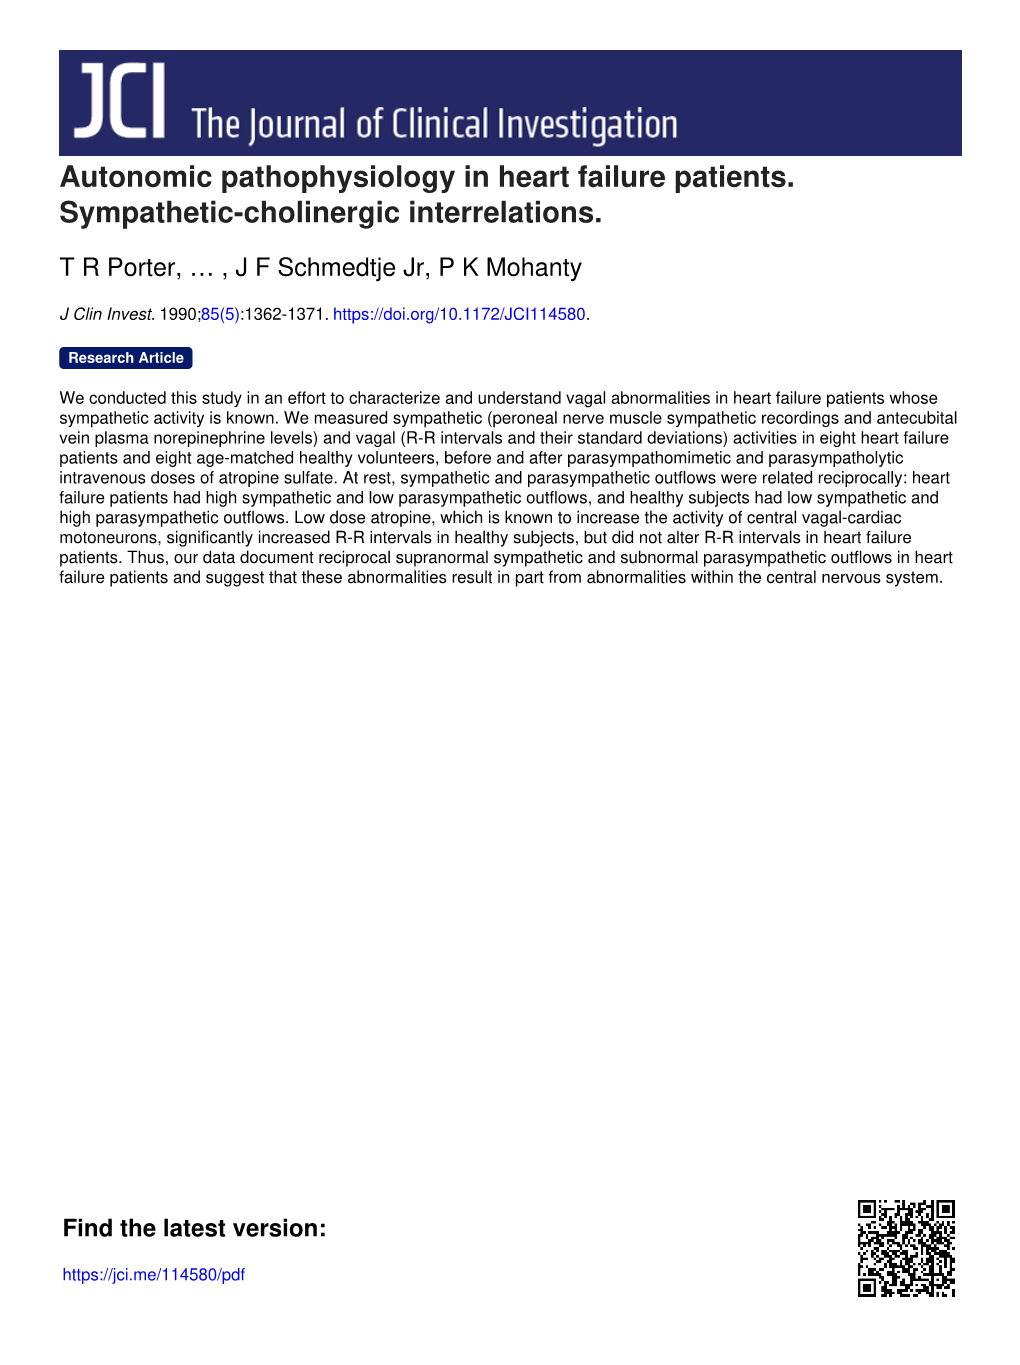 Autonomic Pathophysiology in Heart Failure Patients. Sympathetic-Cholinergic Interrelations